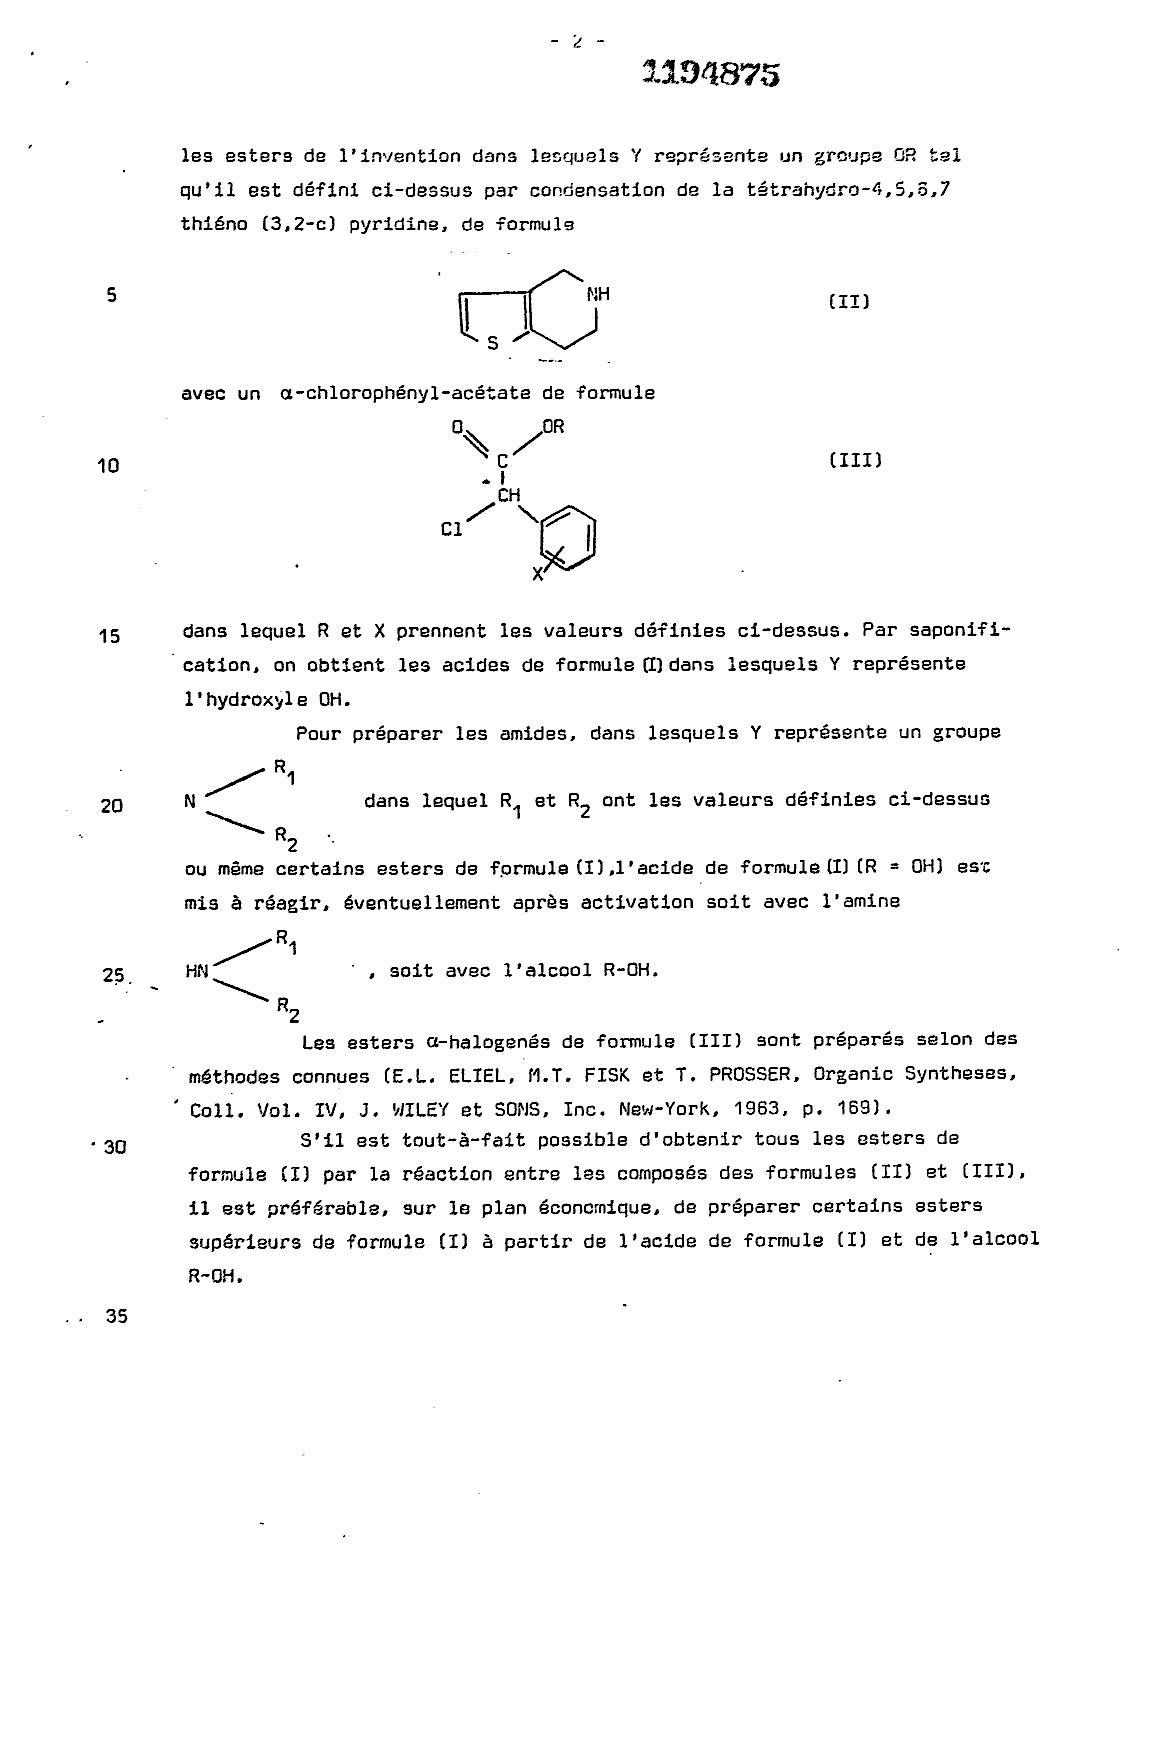 Canadian Patent Document 1194875. Description 19921218. Image 2 of 15